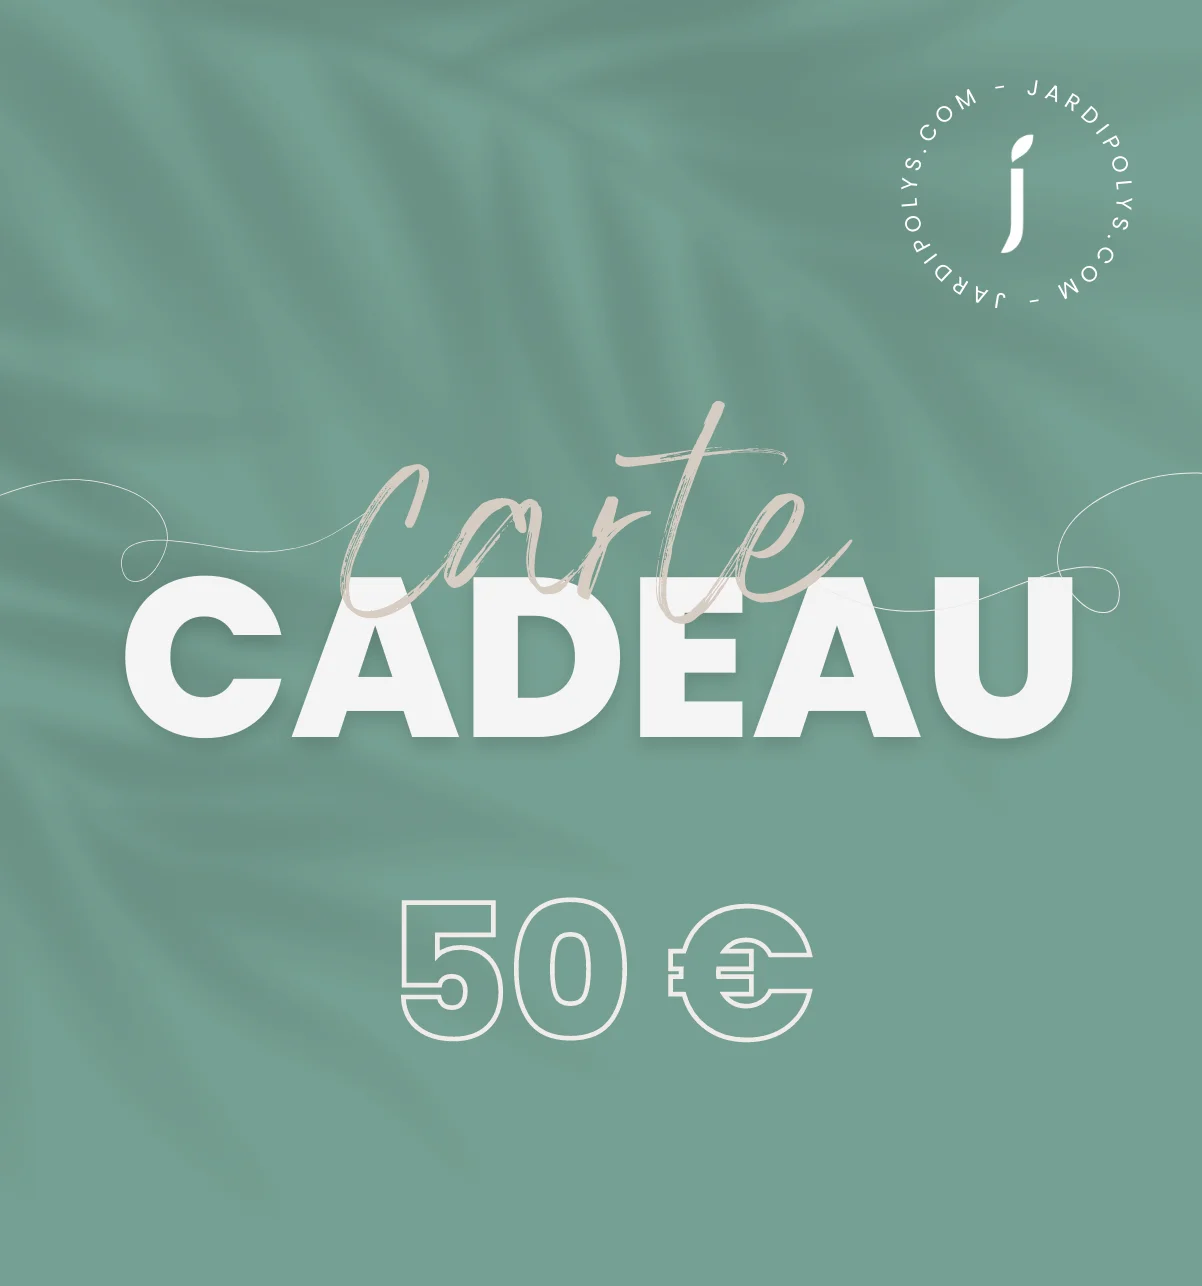 CARTE CADEAU 50E 1202x1282px